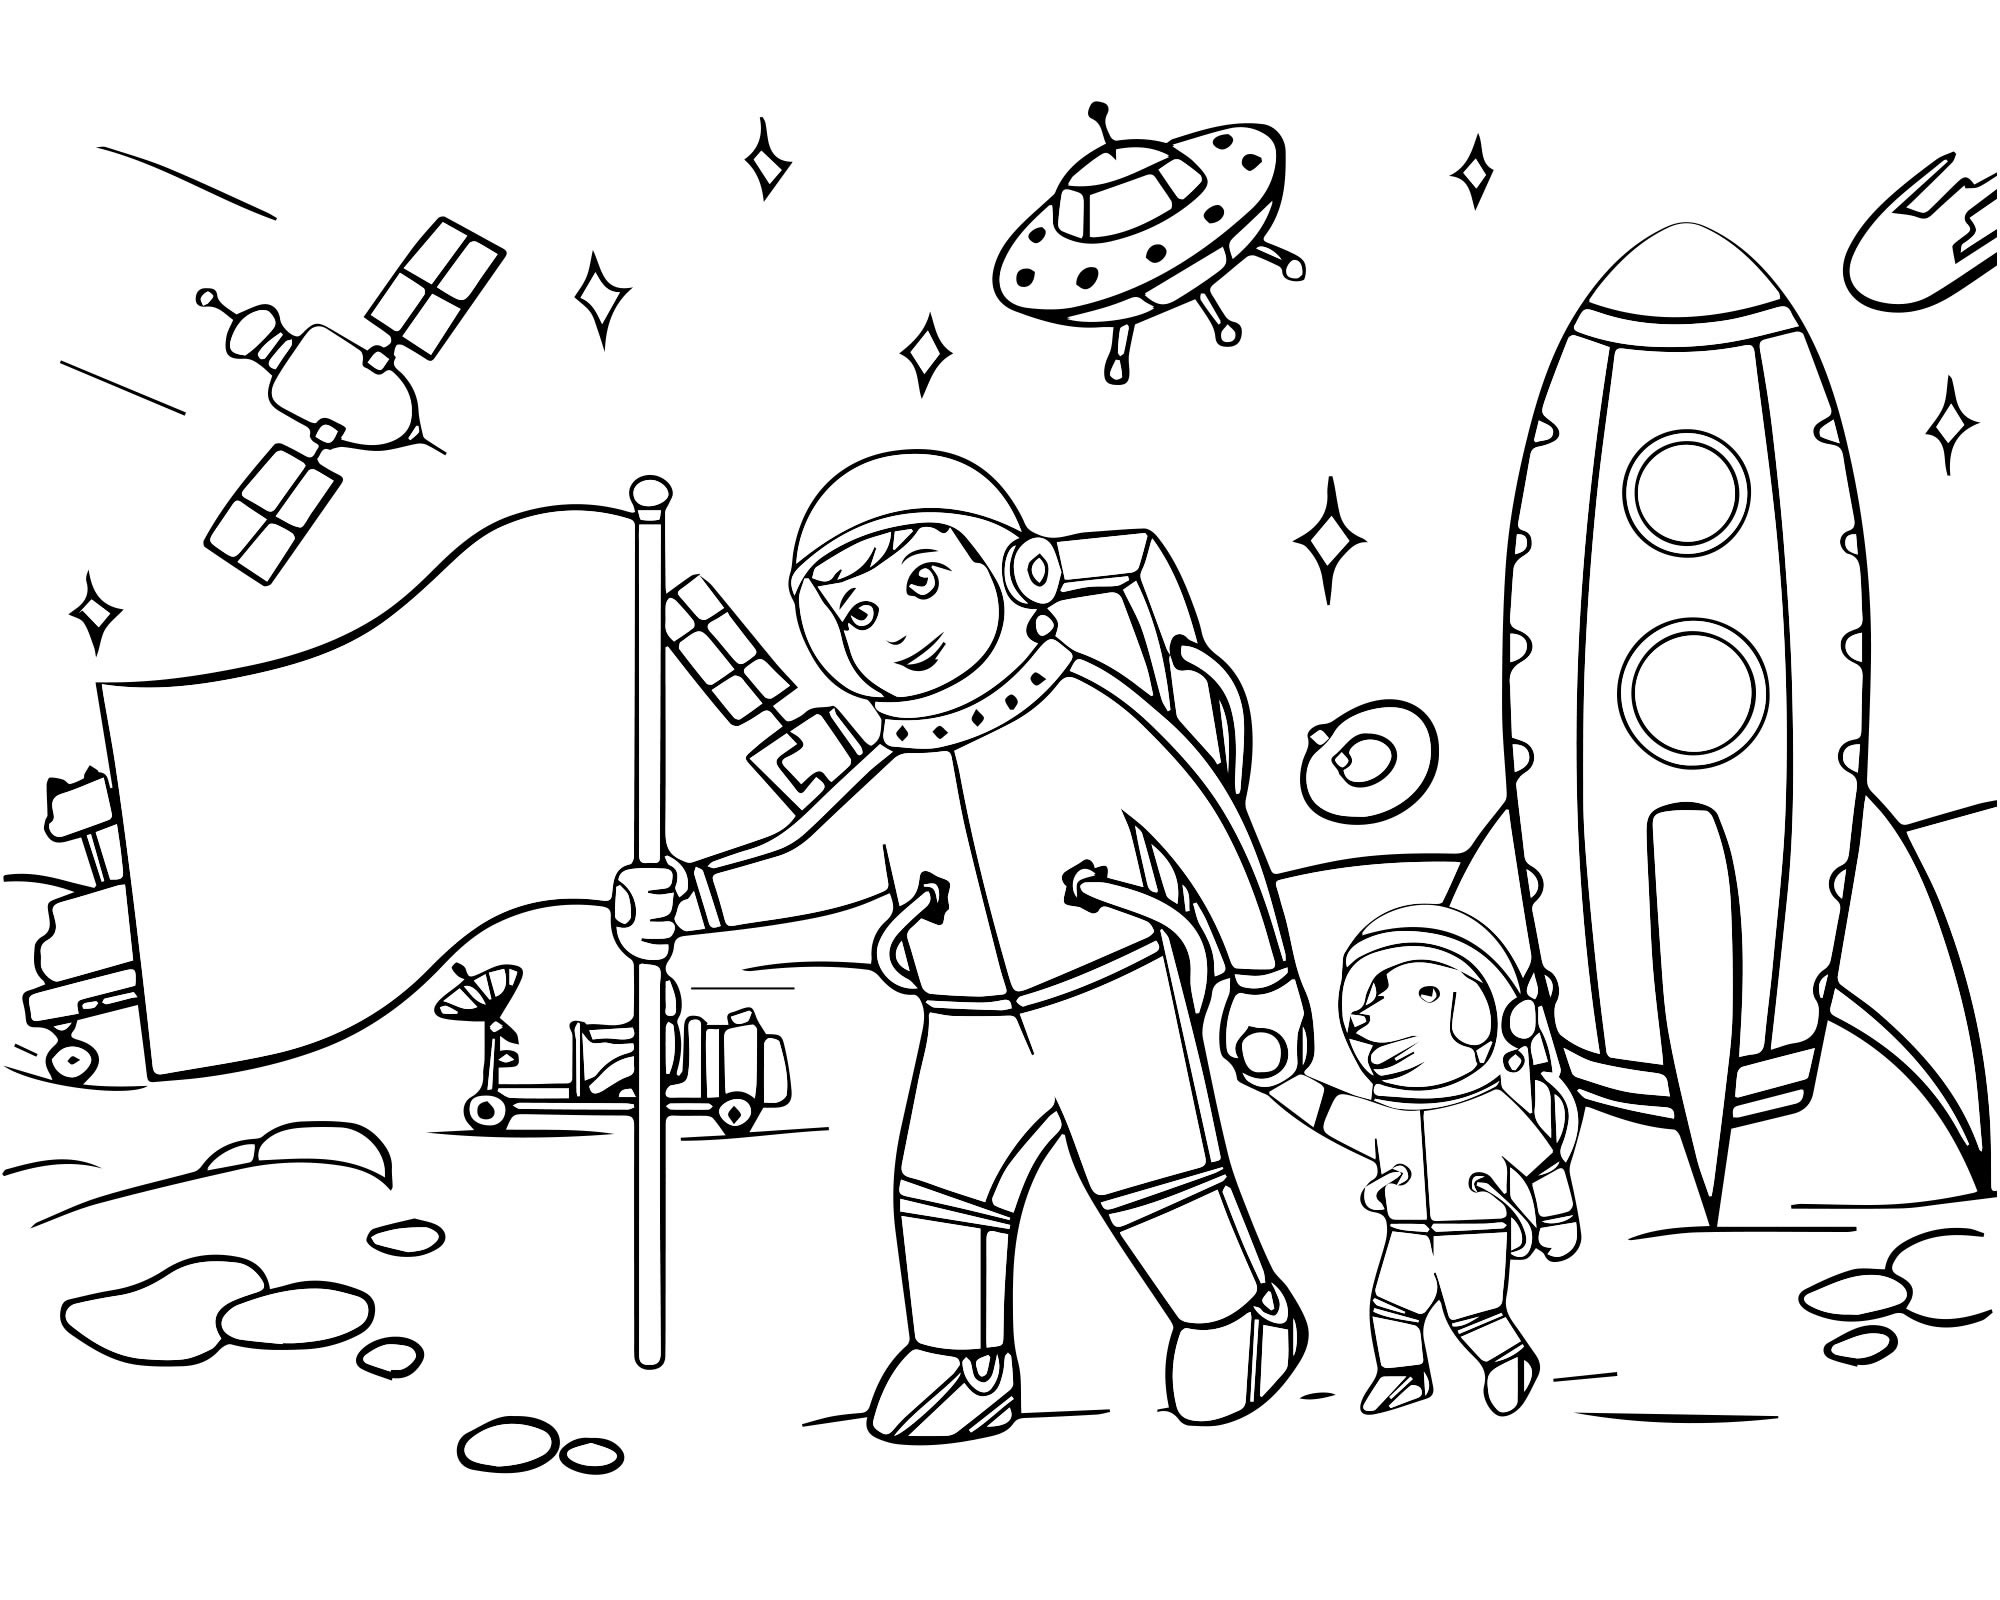 Трафареты ко дню космонавтики. Раскраска. В космосе. Космос раскраска для детей. Раскраска день космонавтики для детей. Космические раскраски для детей.